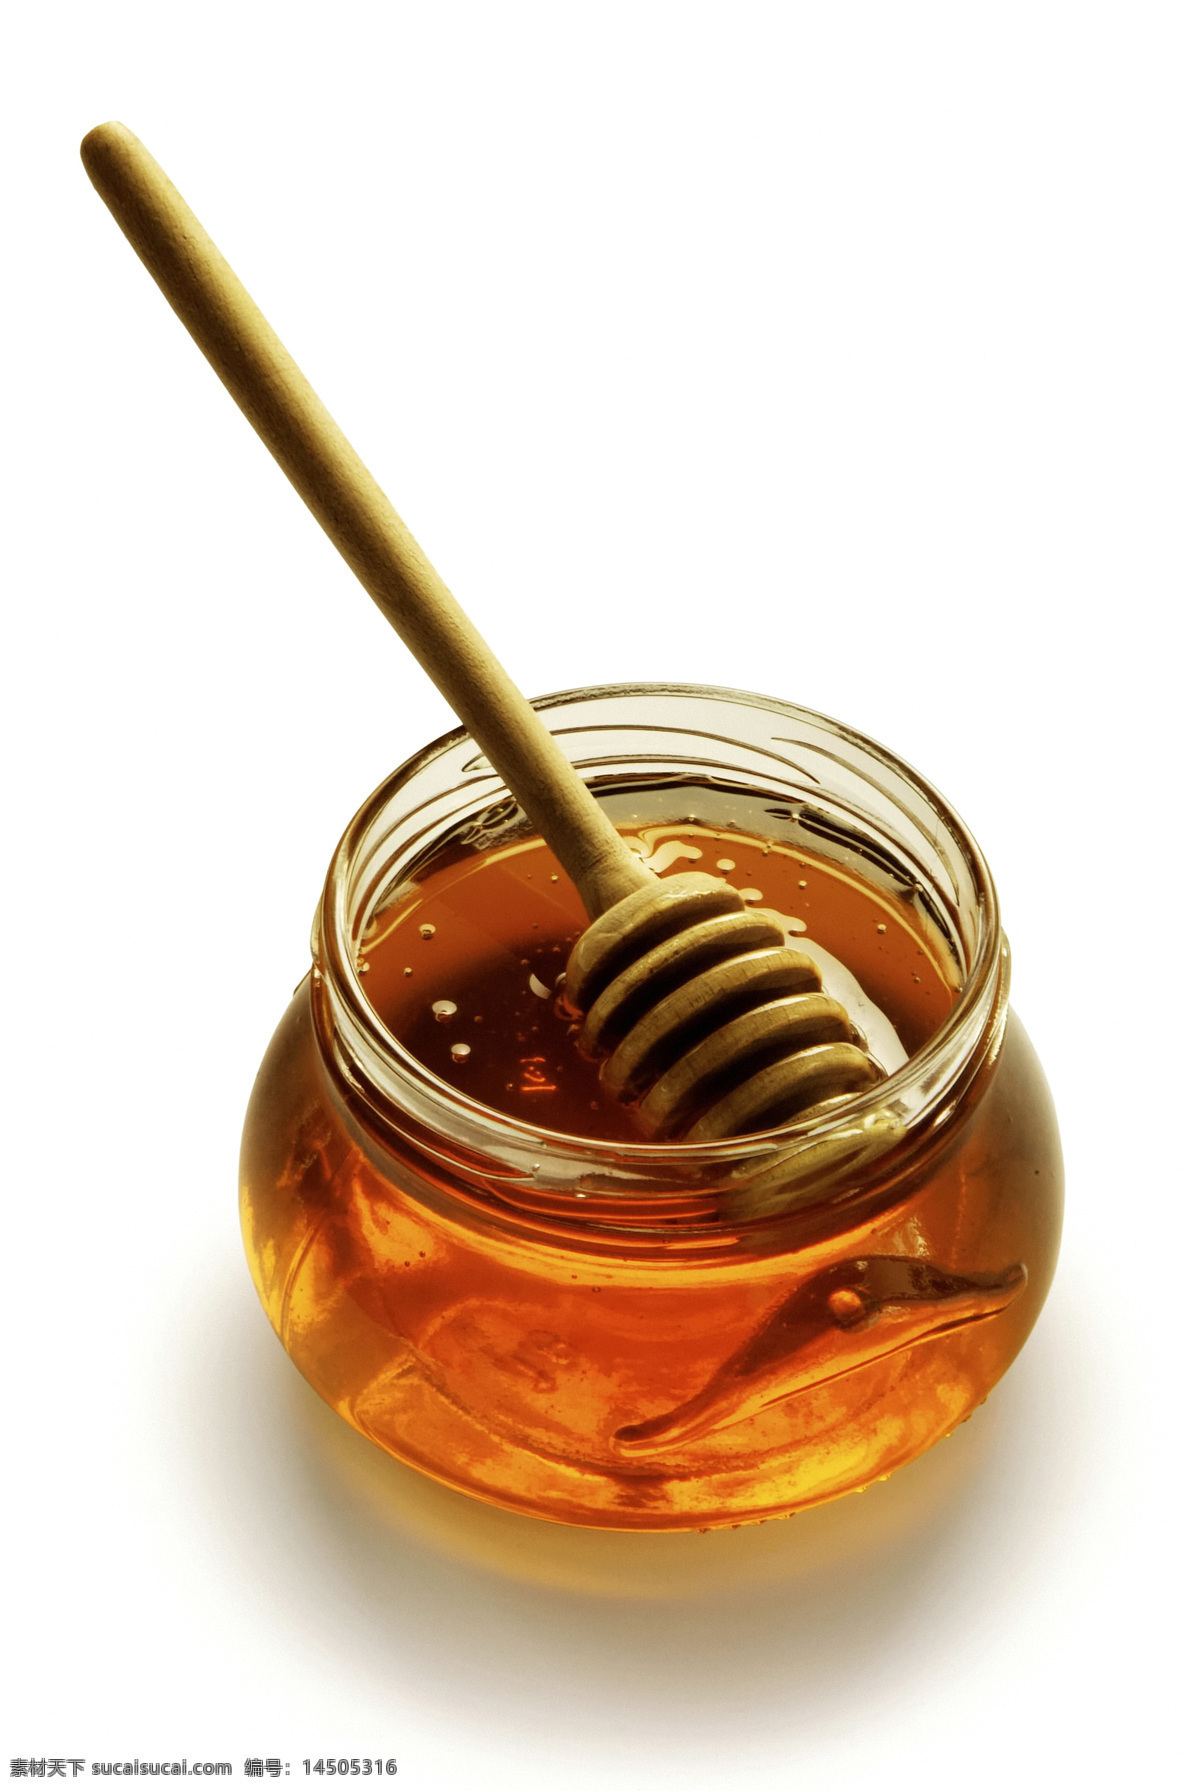 蜂蜜 玻璃瓶 创意图片 高清图片 明 瓶子 液体